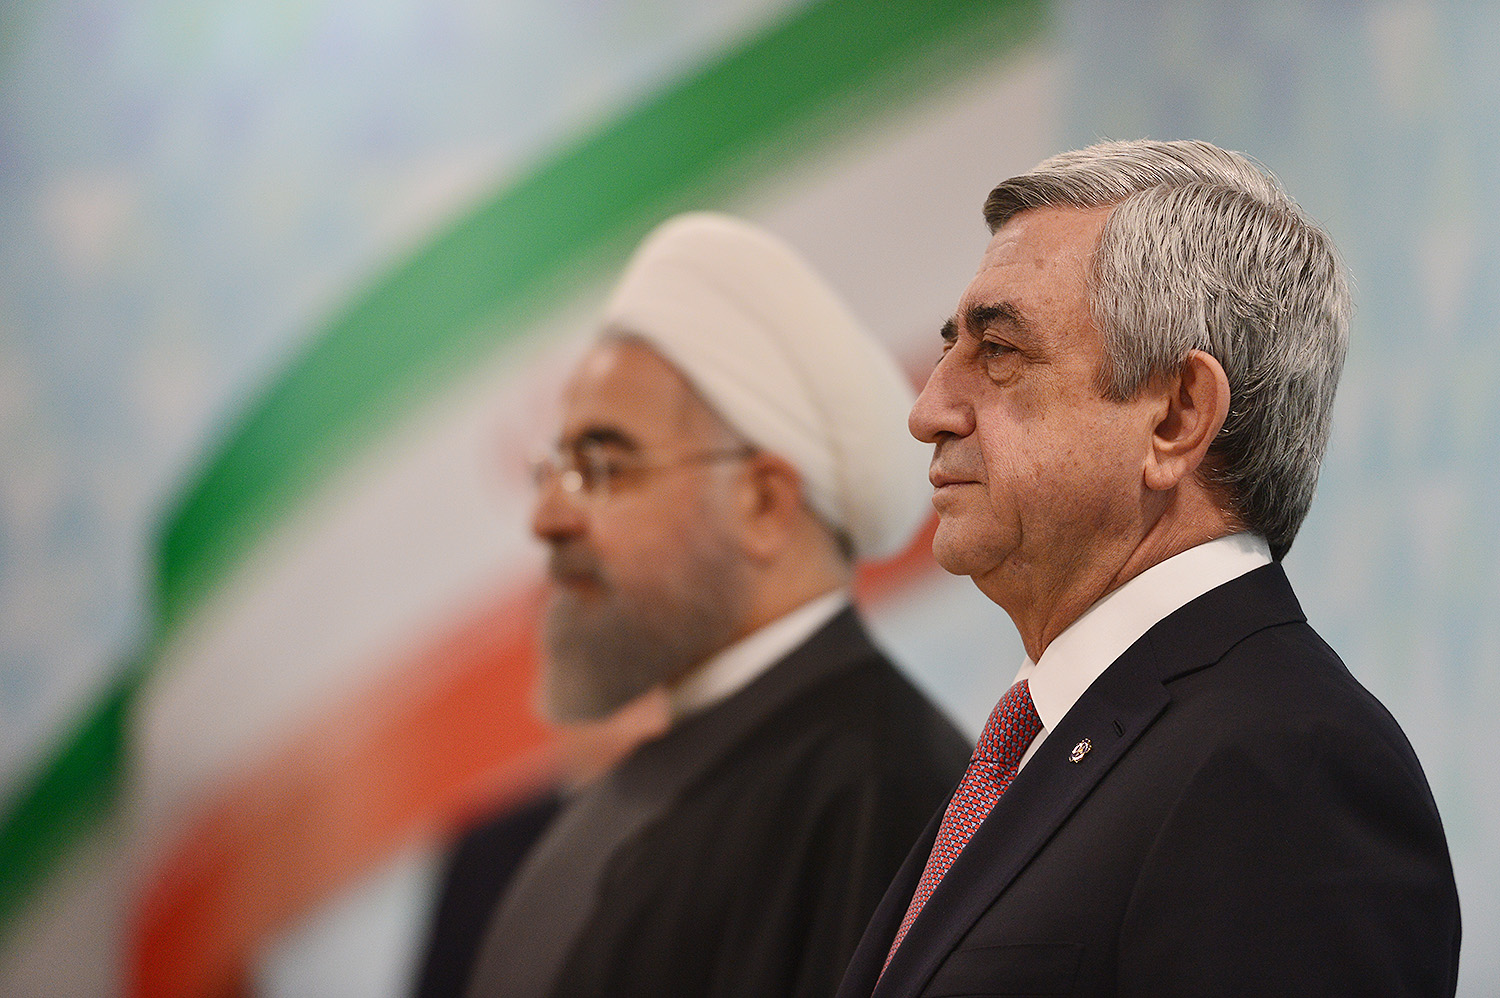 Հայաստանն ամենակարճ և անվտանգ ցամաքային ճանապարհն է Իրանի հետ Եվրոպան կապելու համար